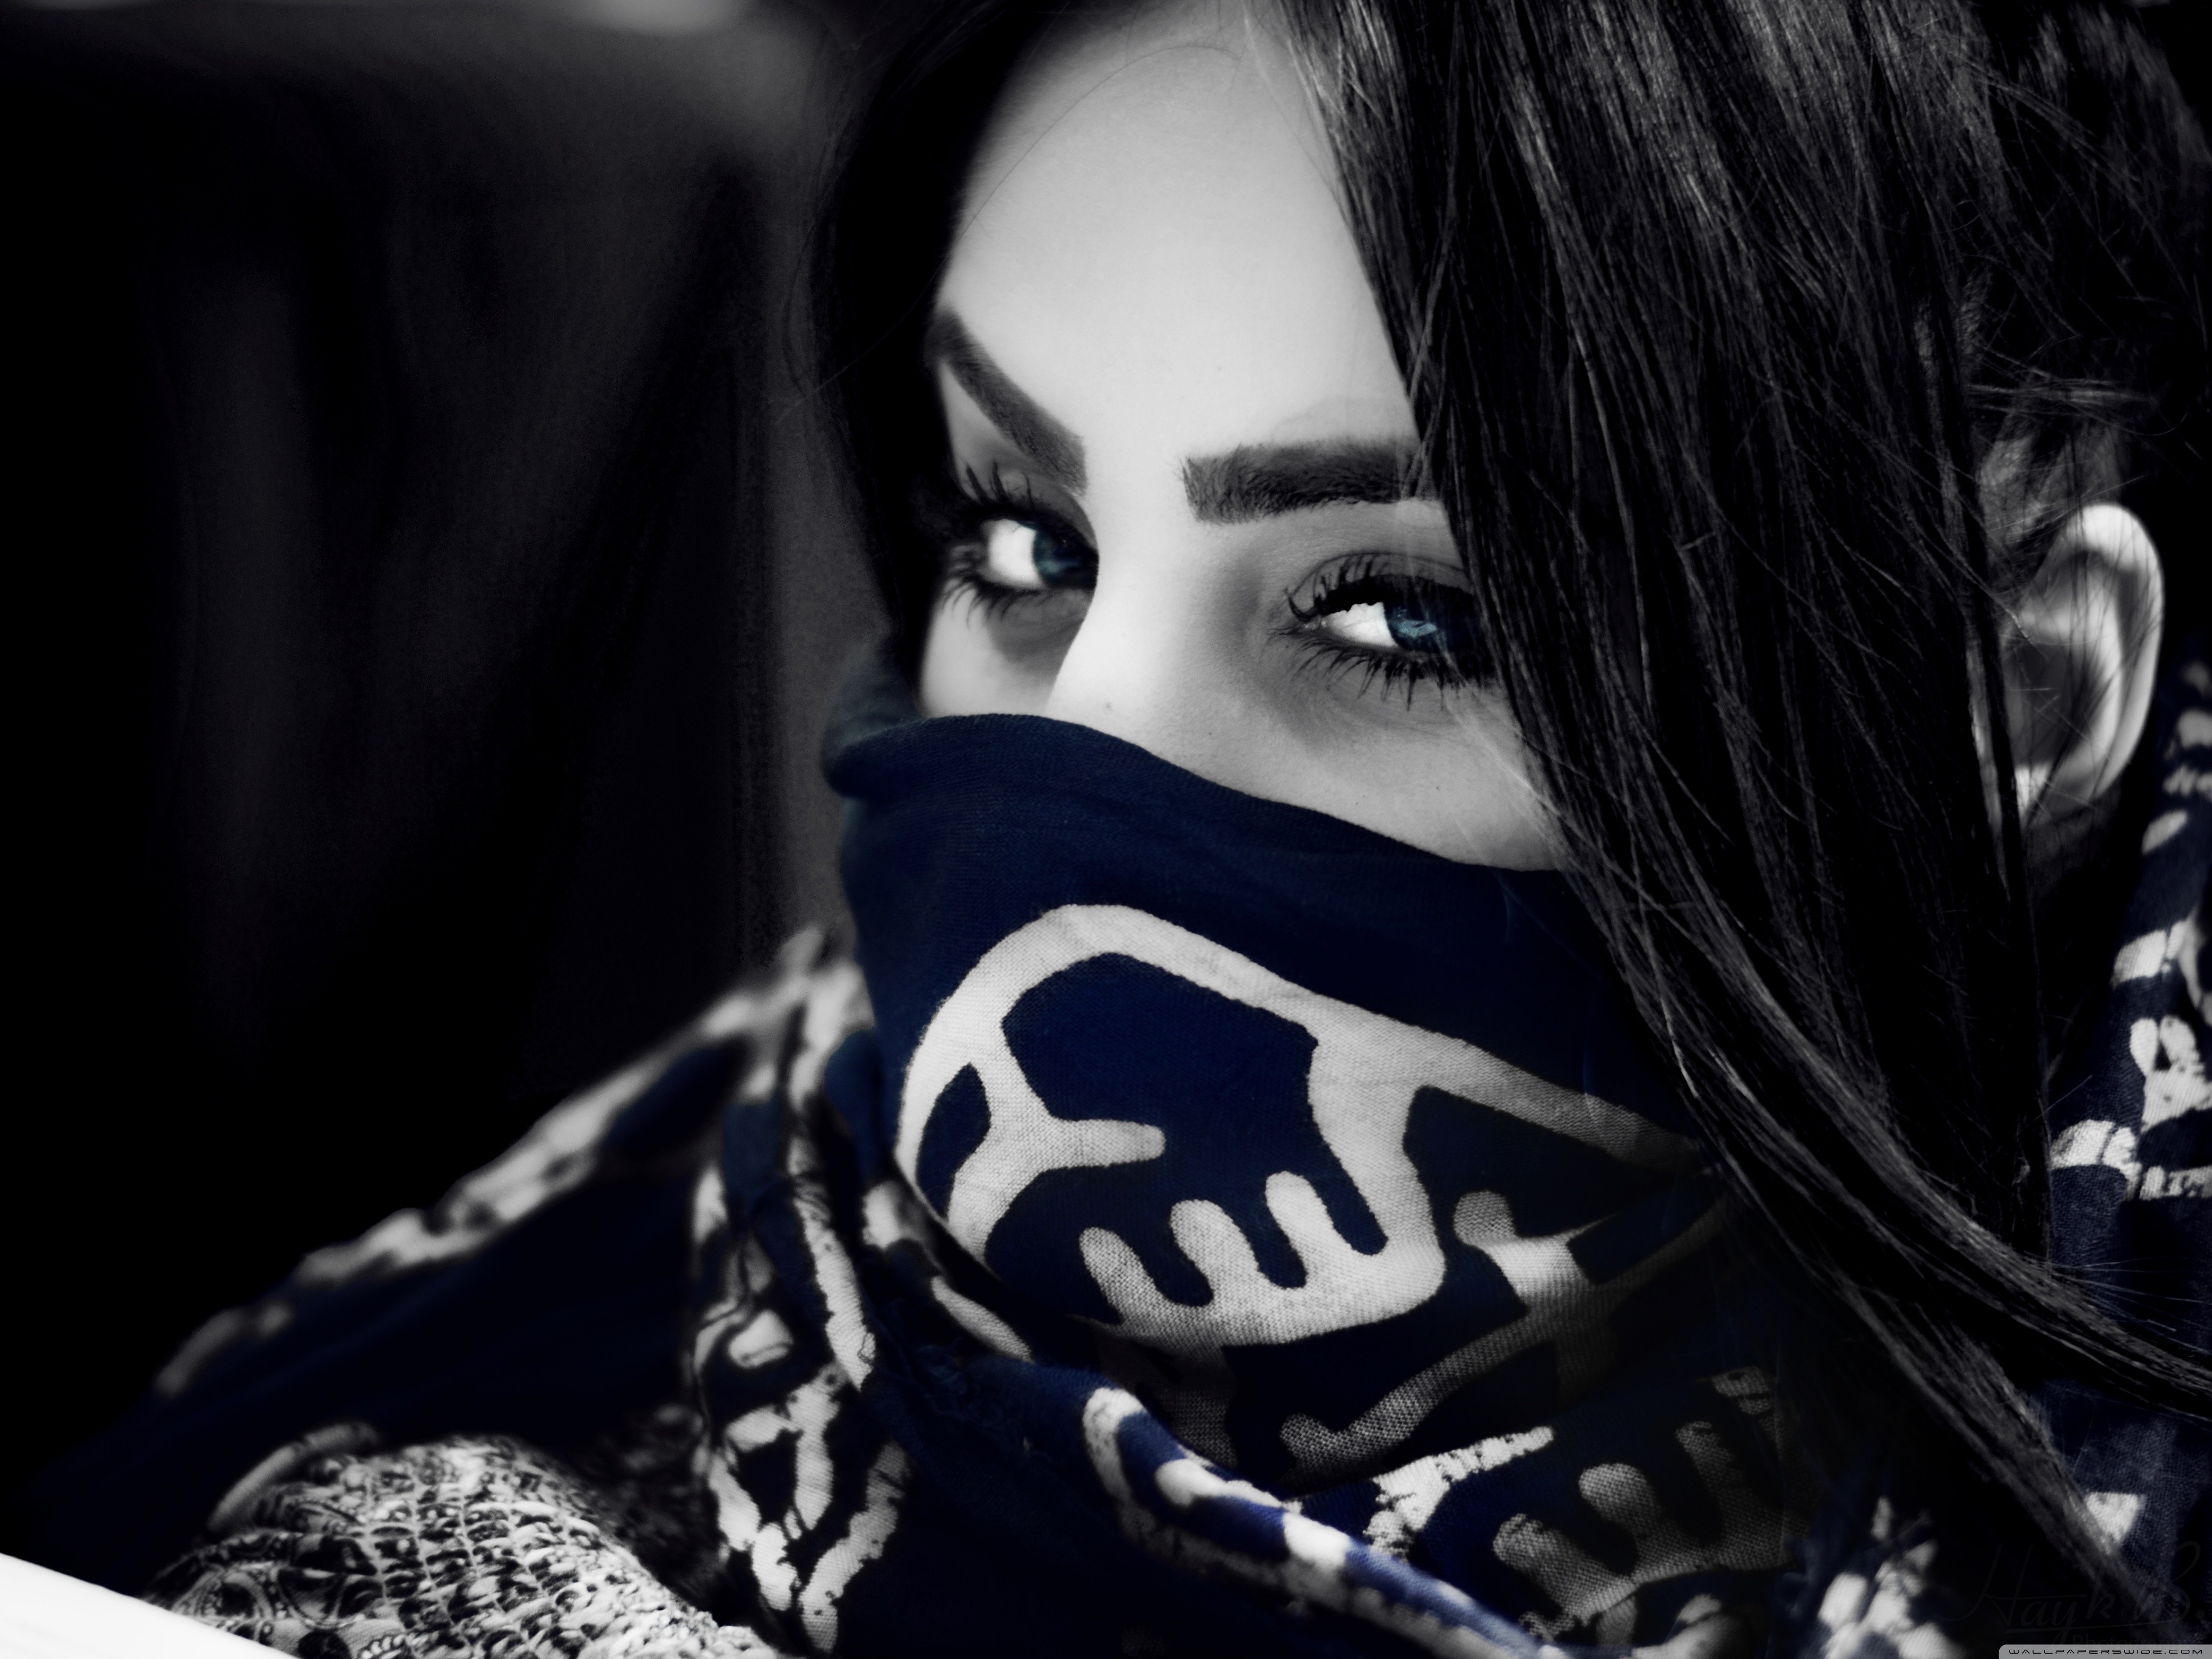 Yugur mp3 remix. Девушка в маске. Девушка в бандане на лице. Красивые арабские девушки. Красивая девушка в маске.